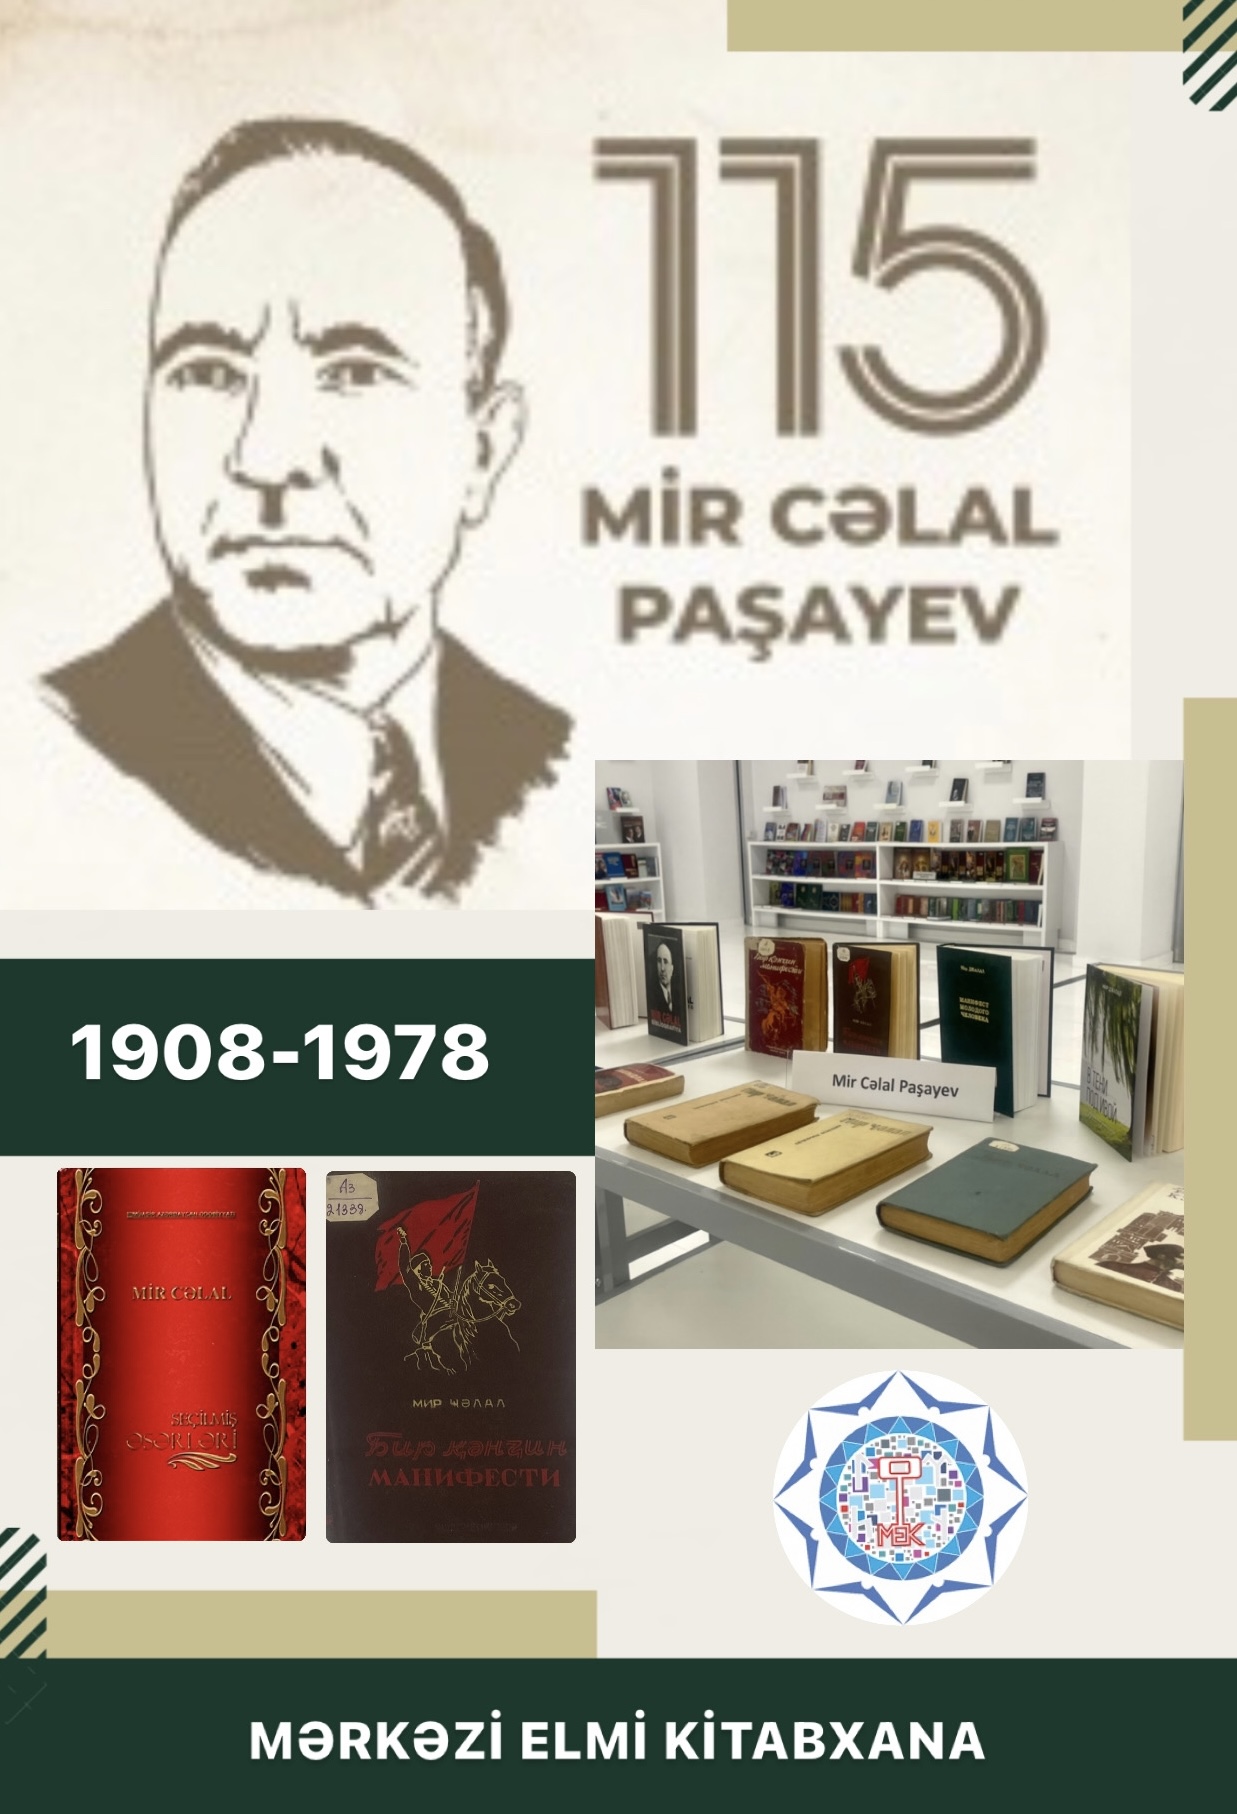 MEK-də görkəmli alim və yazıçı Mir Cəlal Paşayevin 115 illik...